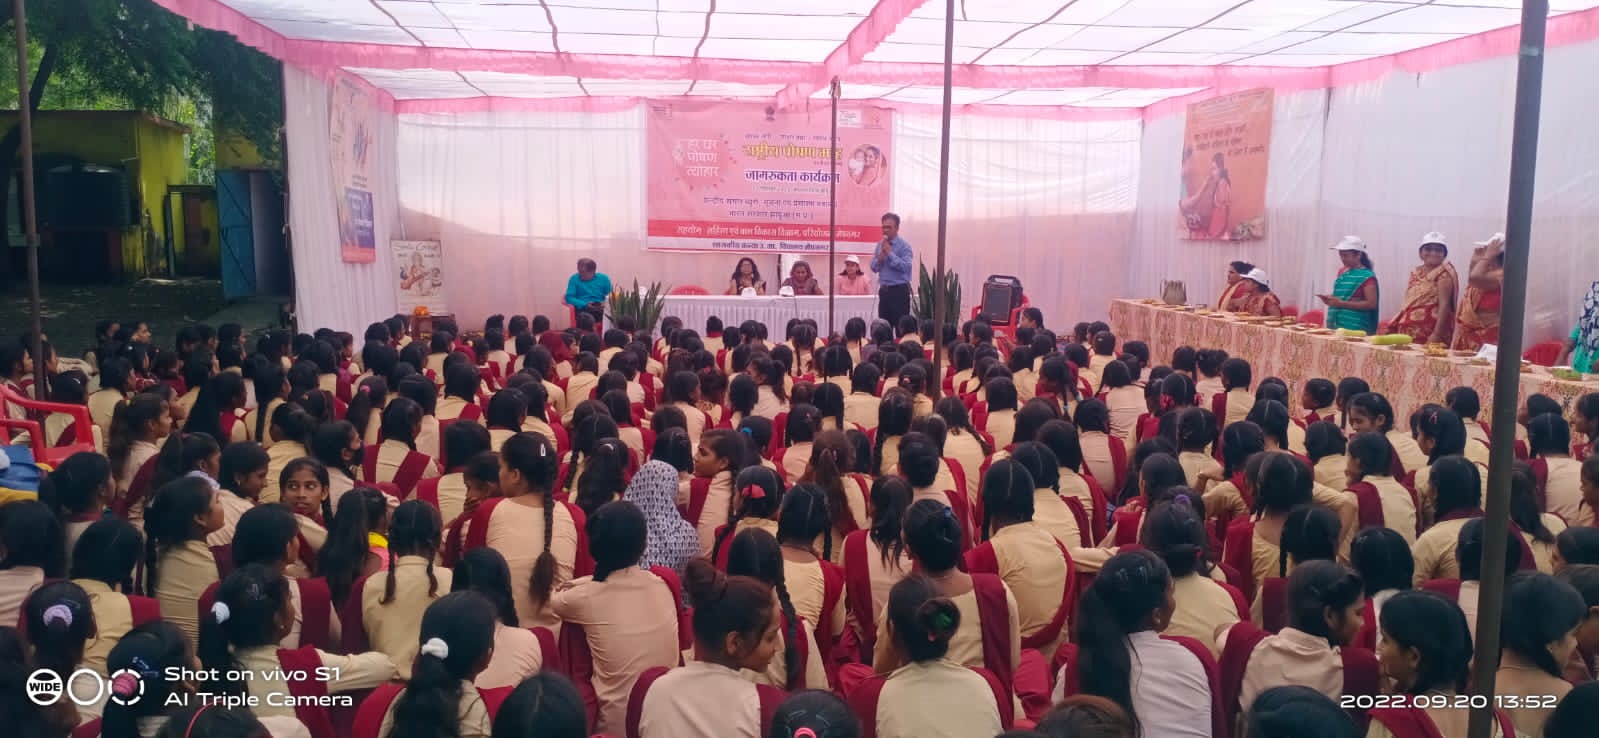 राष्ट्रीय पोषण माह के अंतर्गत मेघनगर महिला बाल विकास विभाग द्वारा किया गया जागरूकता कार्यक्रम का आयोजन | New India Times